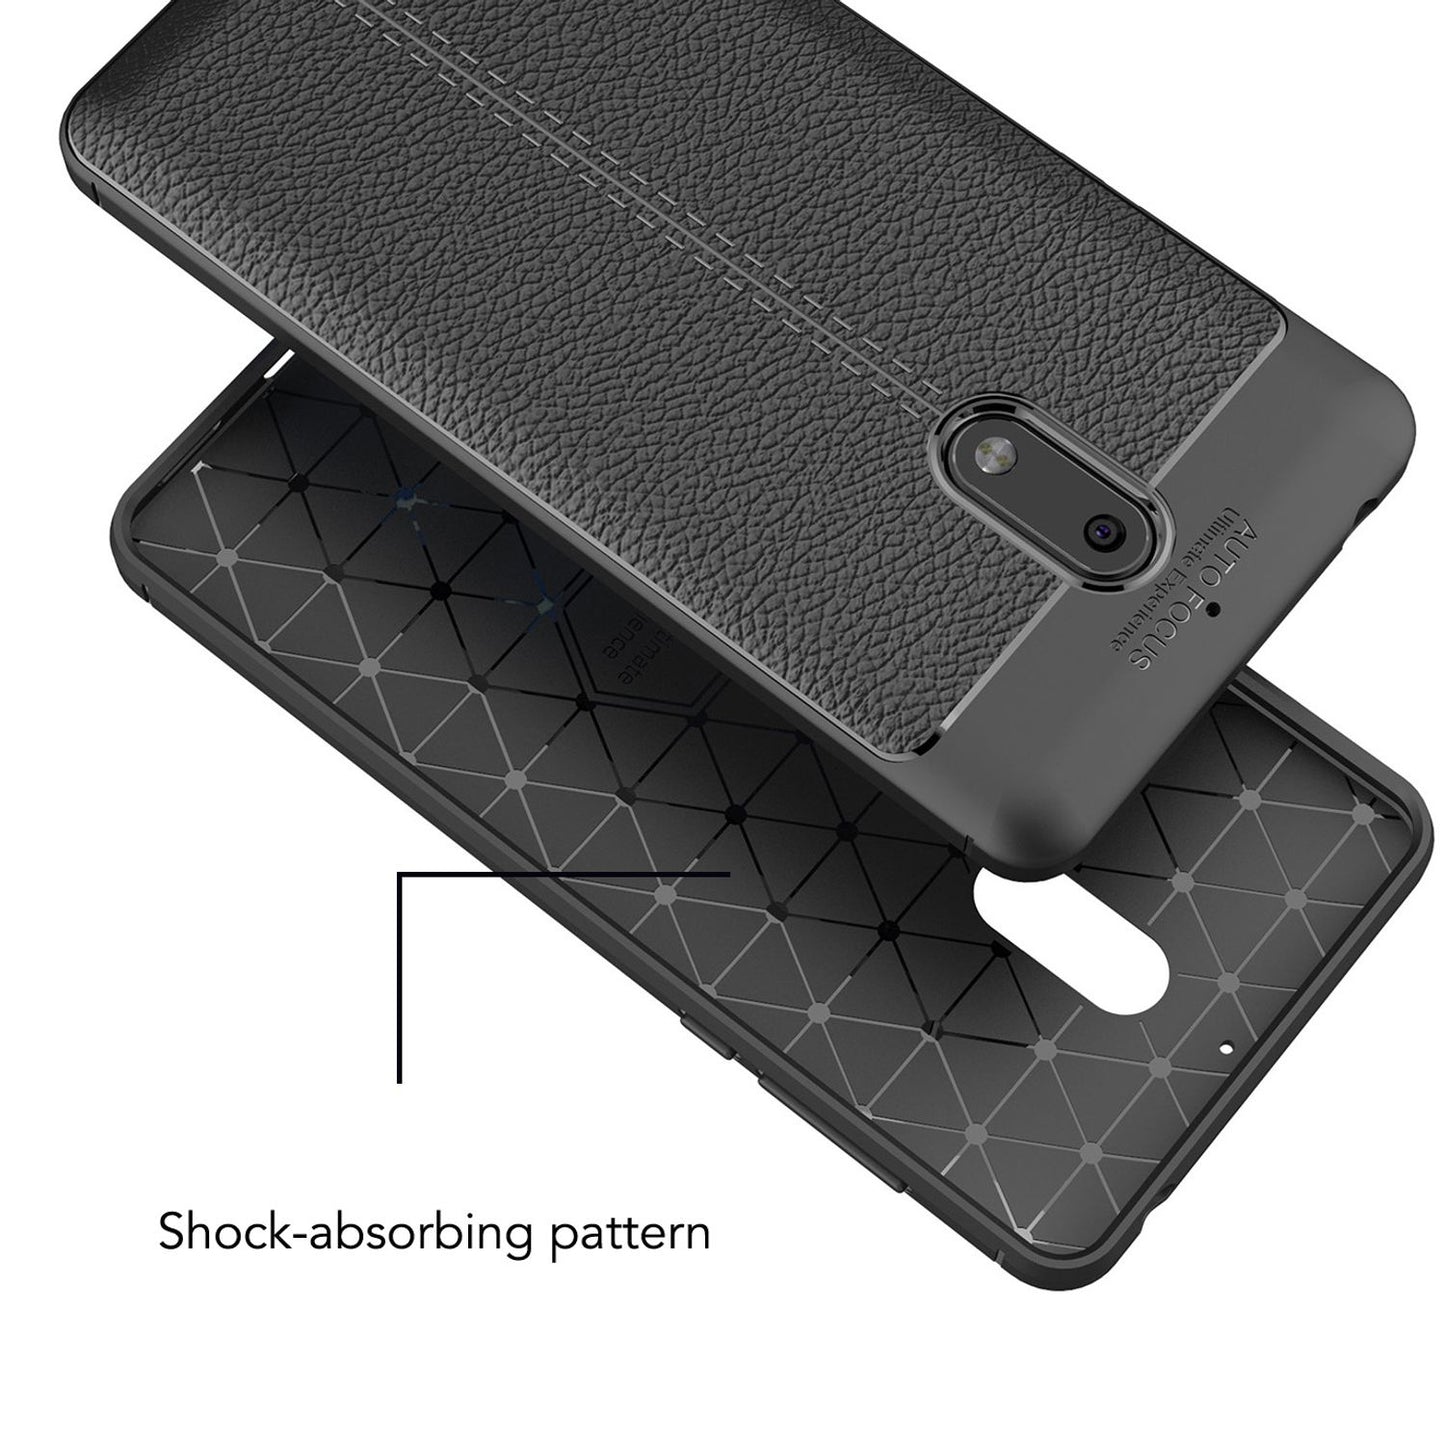 NALIA Handy Hülle für Nokia 6, Slim Silikon Schutz Cover Case Tasche Bumper Etui